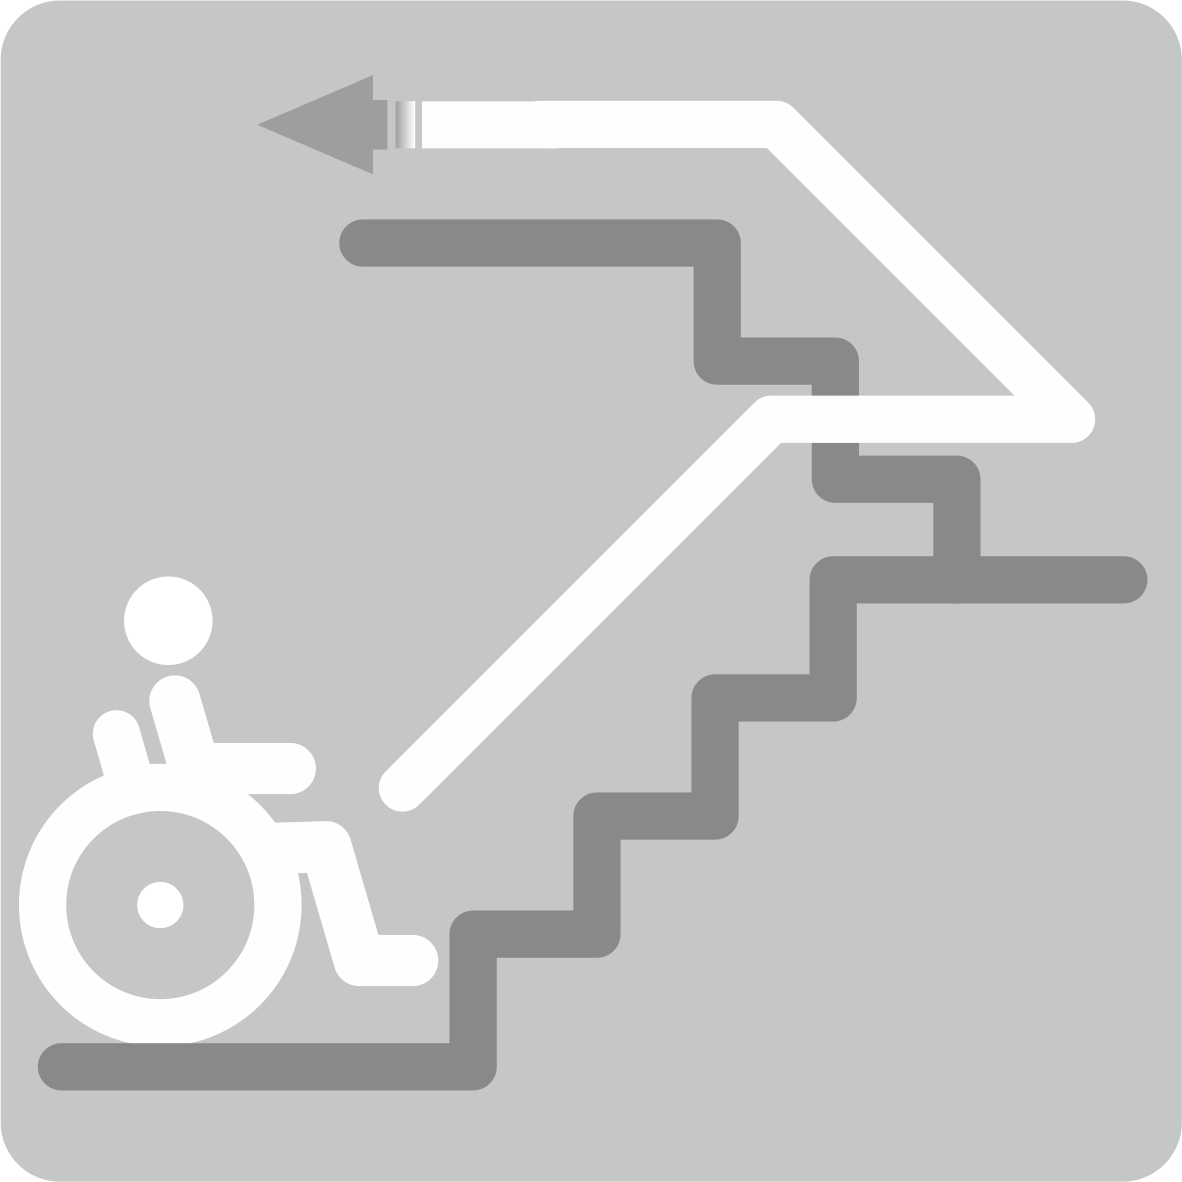 Подъемники для инвалидов по сложной траектории перемещения